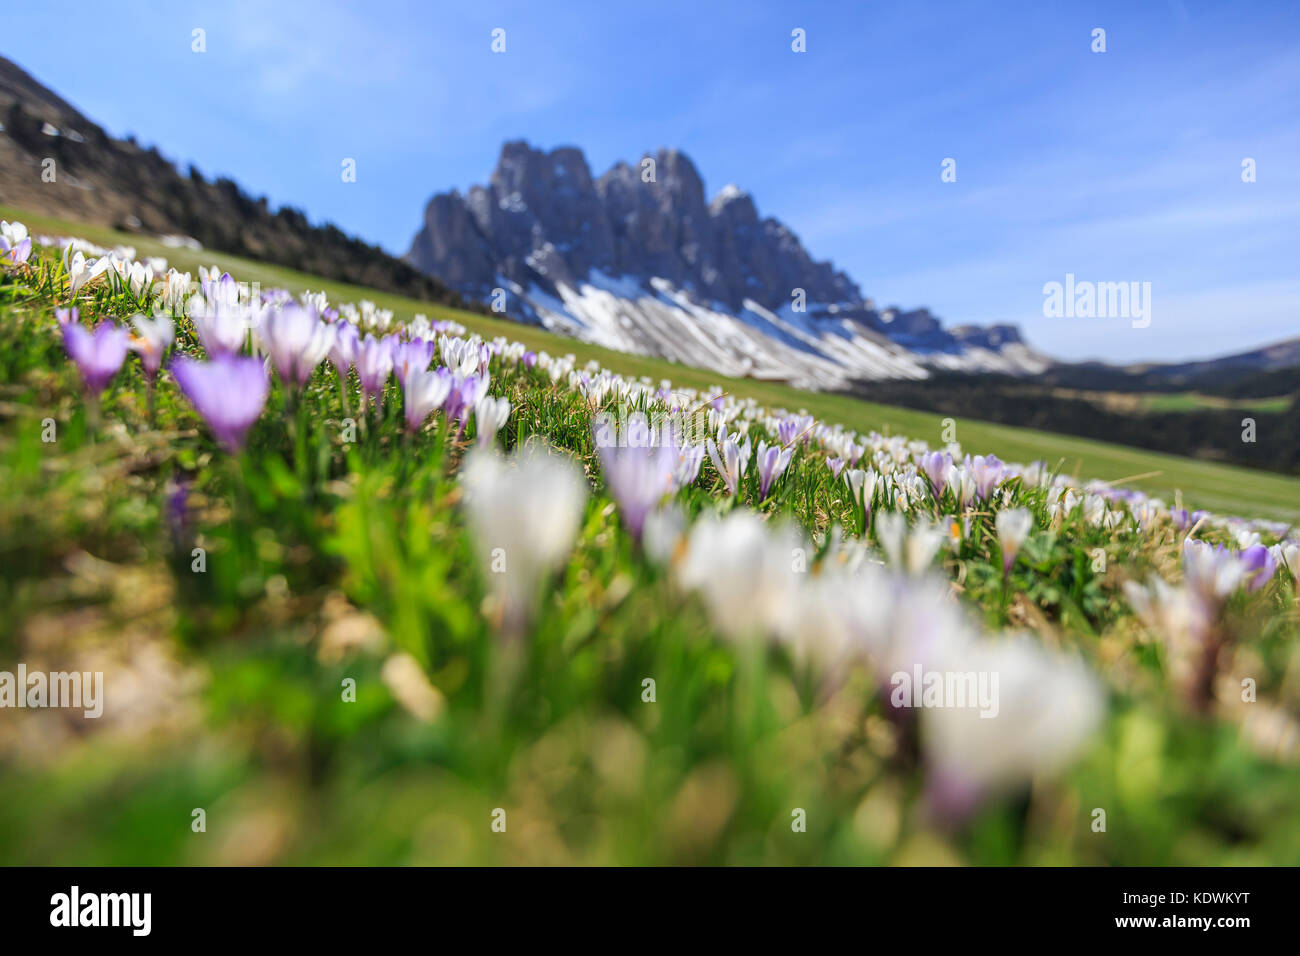 Blumen blühen auf den Wiesen am Fuße der Geisler. malga gampen Villnösser Tal Südtirol Dolomiten Italien Europa Stockfoto